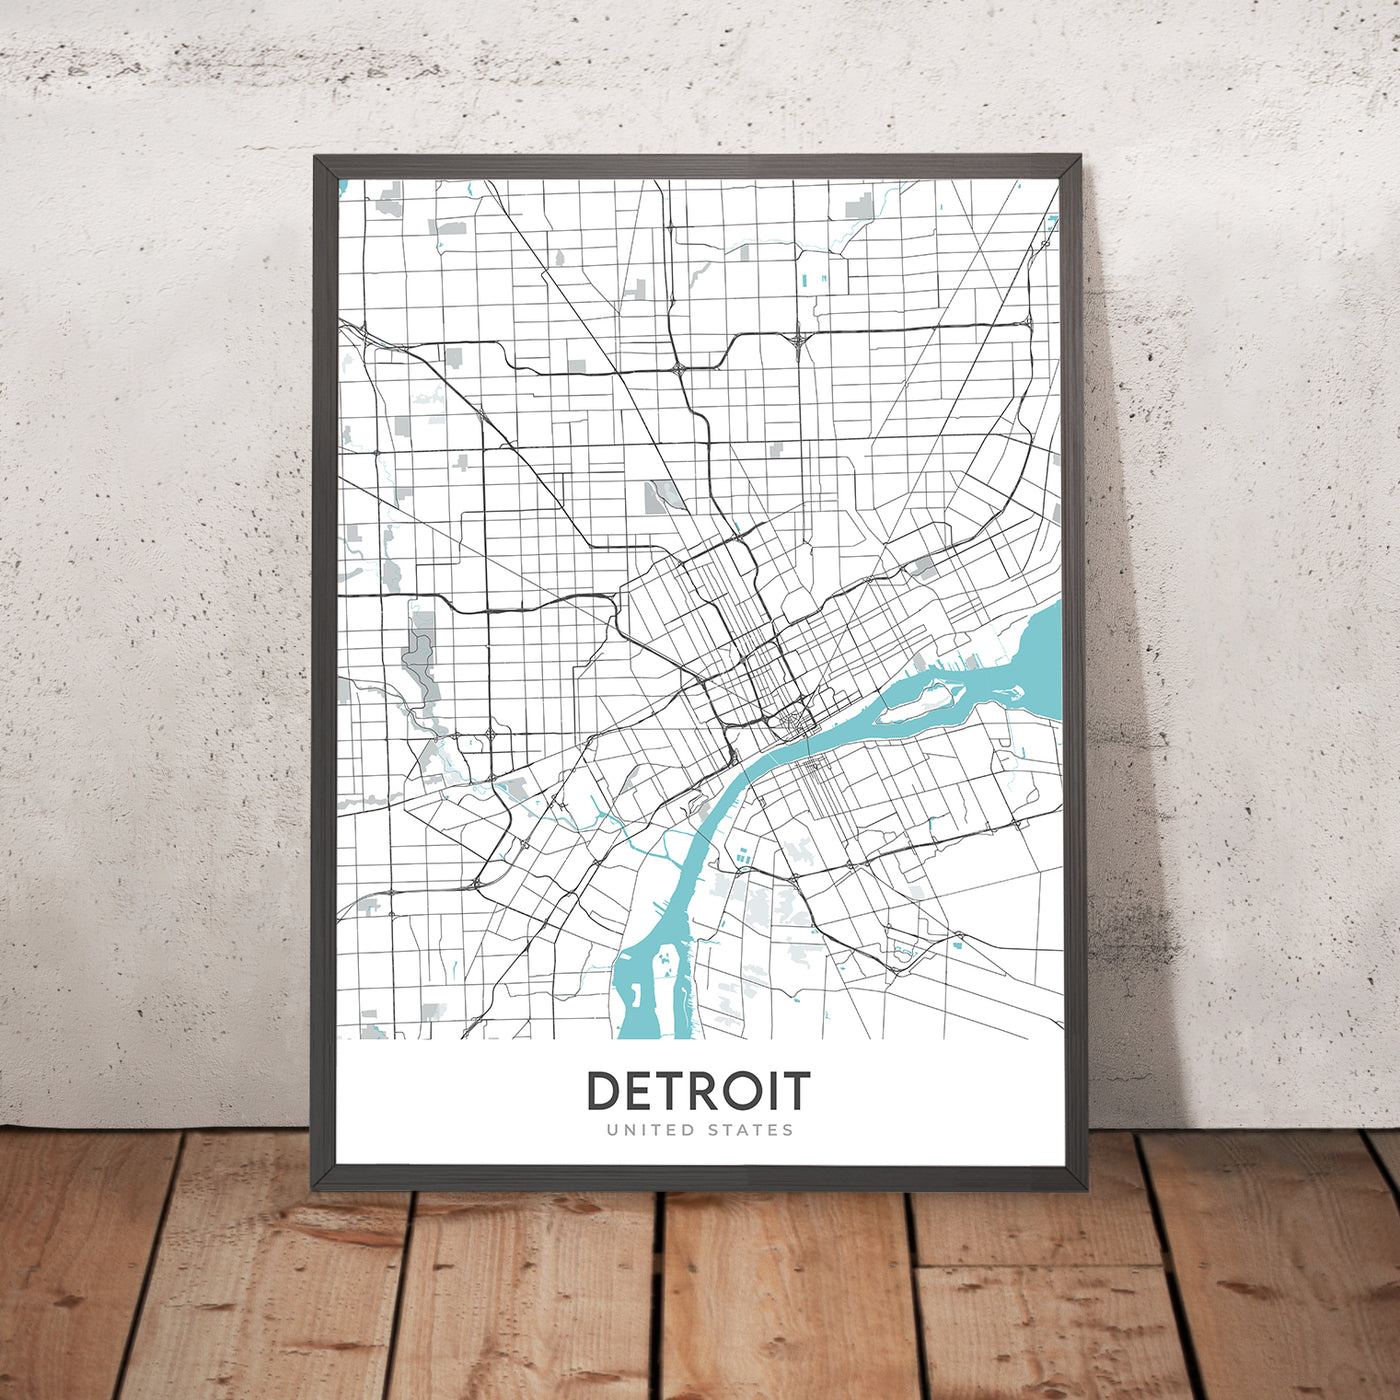 Plan de la ville moderne de Détroit, MI : centre-ville, Belle Isle, Corktown, Motown Museum, Woodward Ave